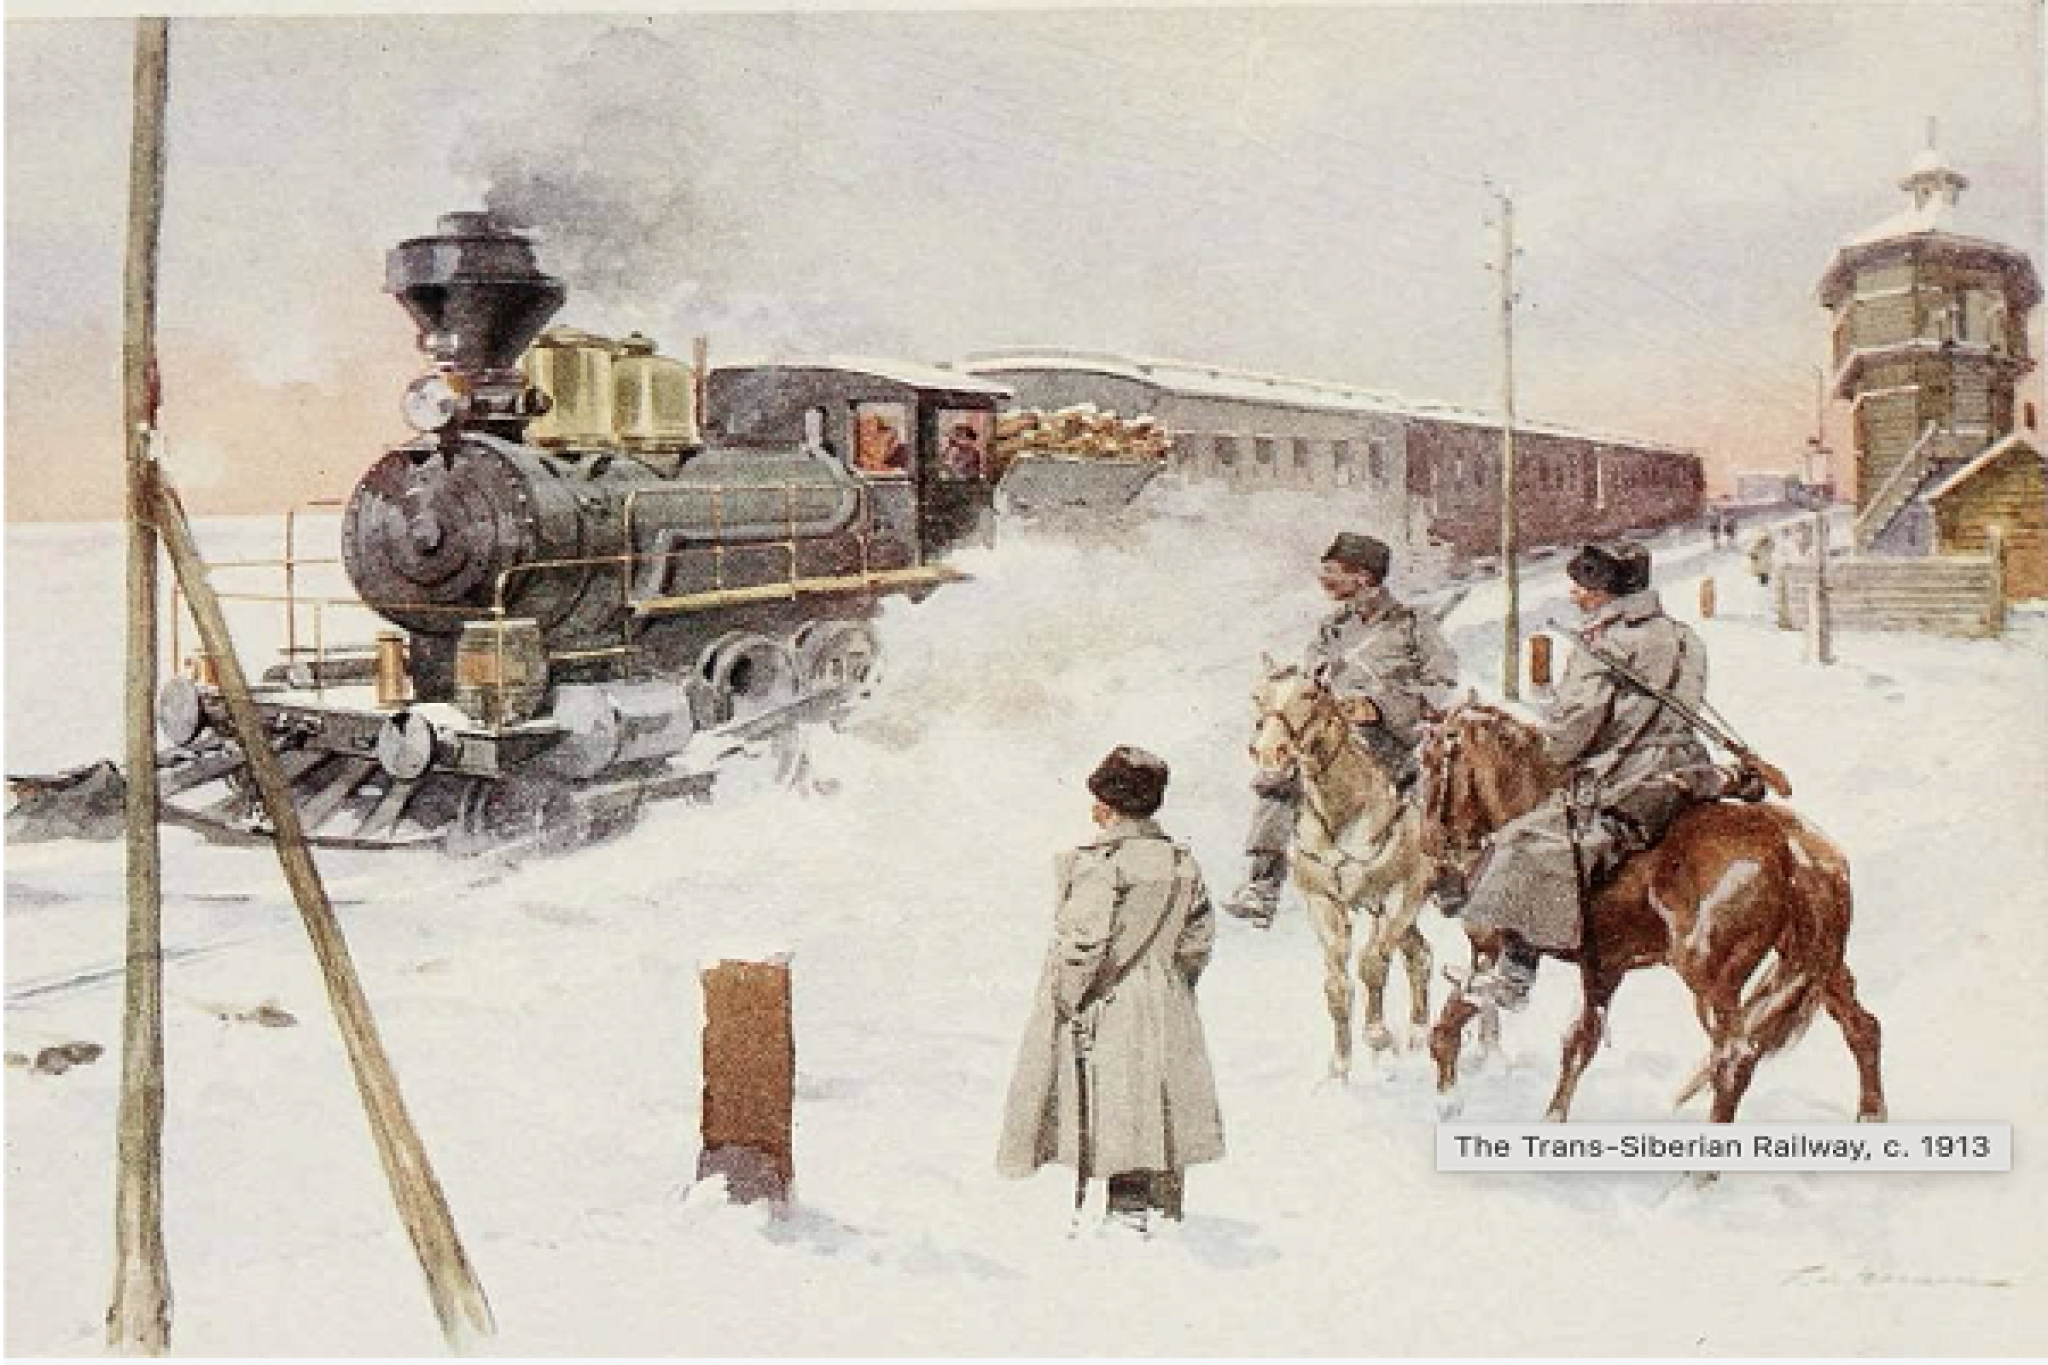 The Trans-Siberian Railway, c. 1913, via Wikicommons